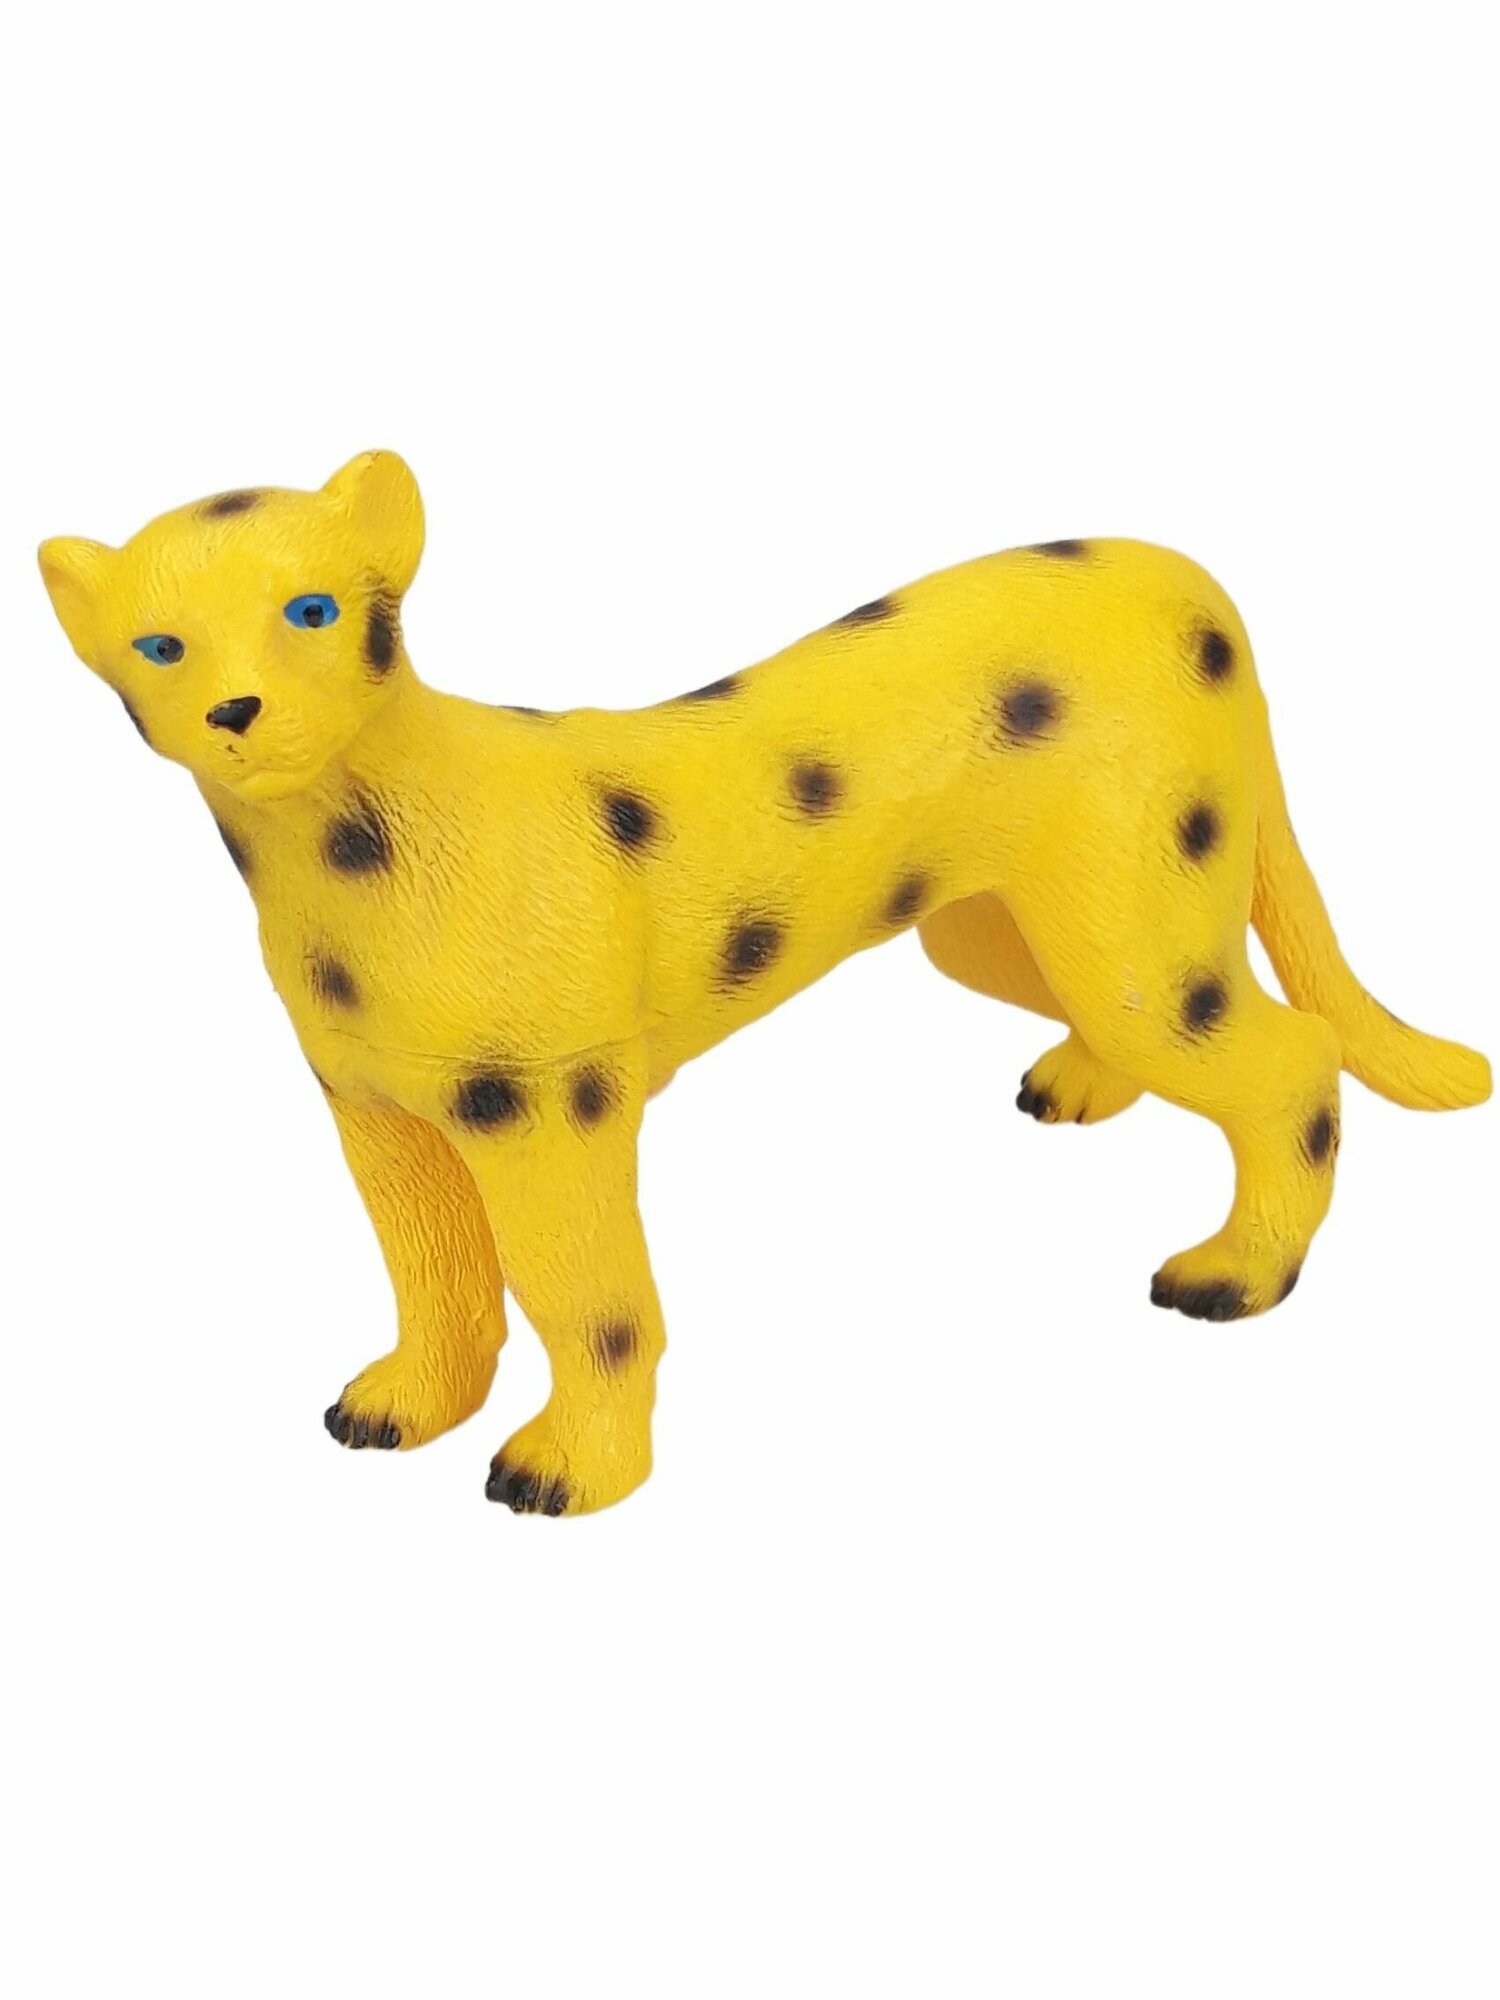 Фигурка животного Леопард, большая коллекционная декоративная игрушка из серии Дикие животные для детей